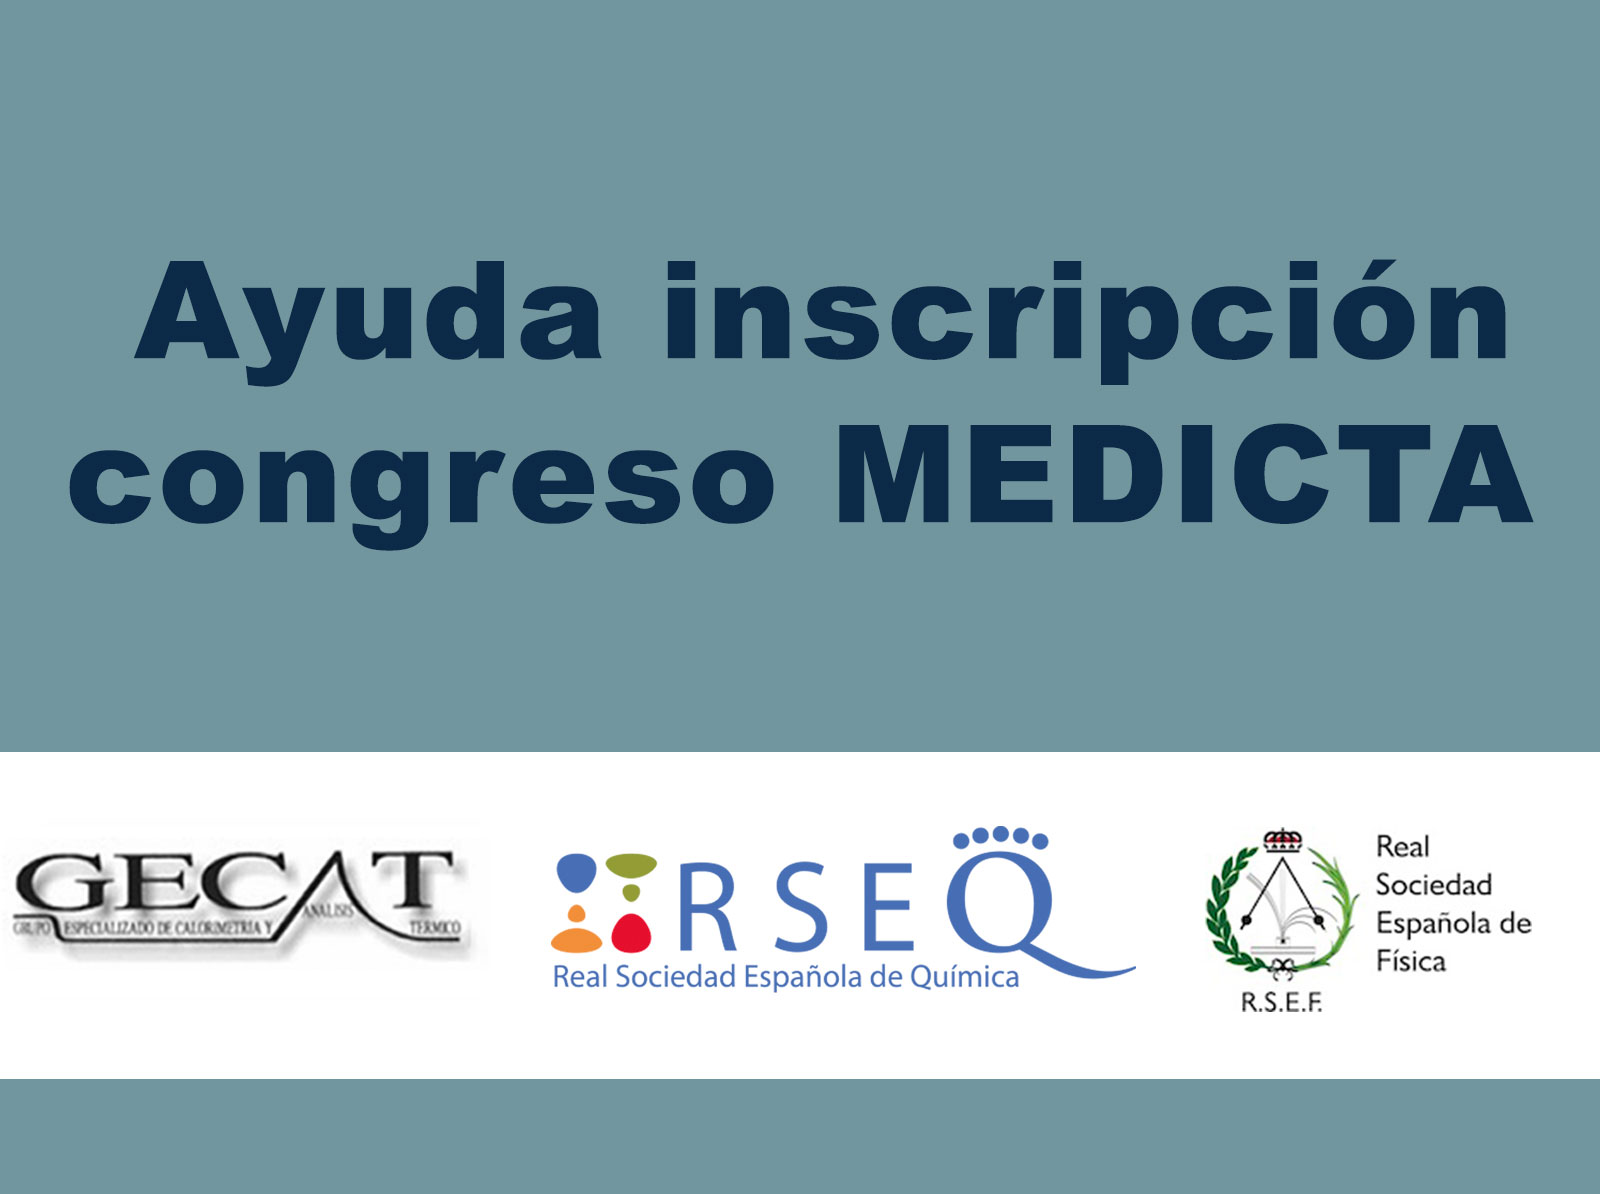 Ayuda inscripción congreso MEDICTA